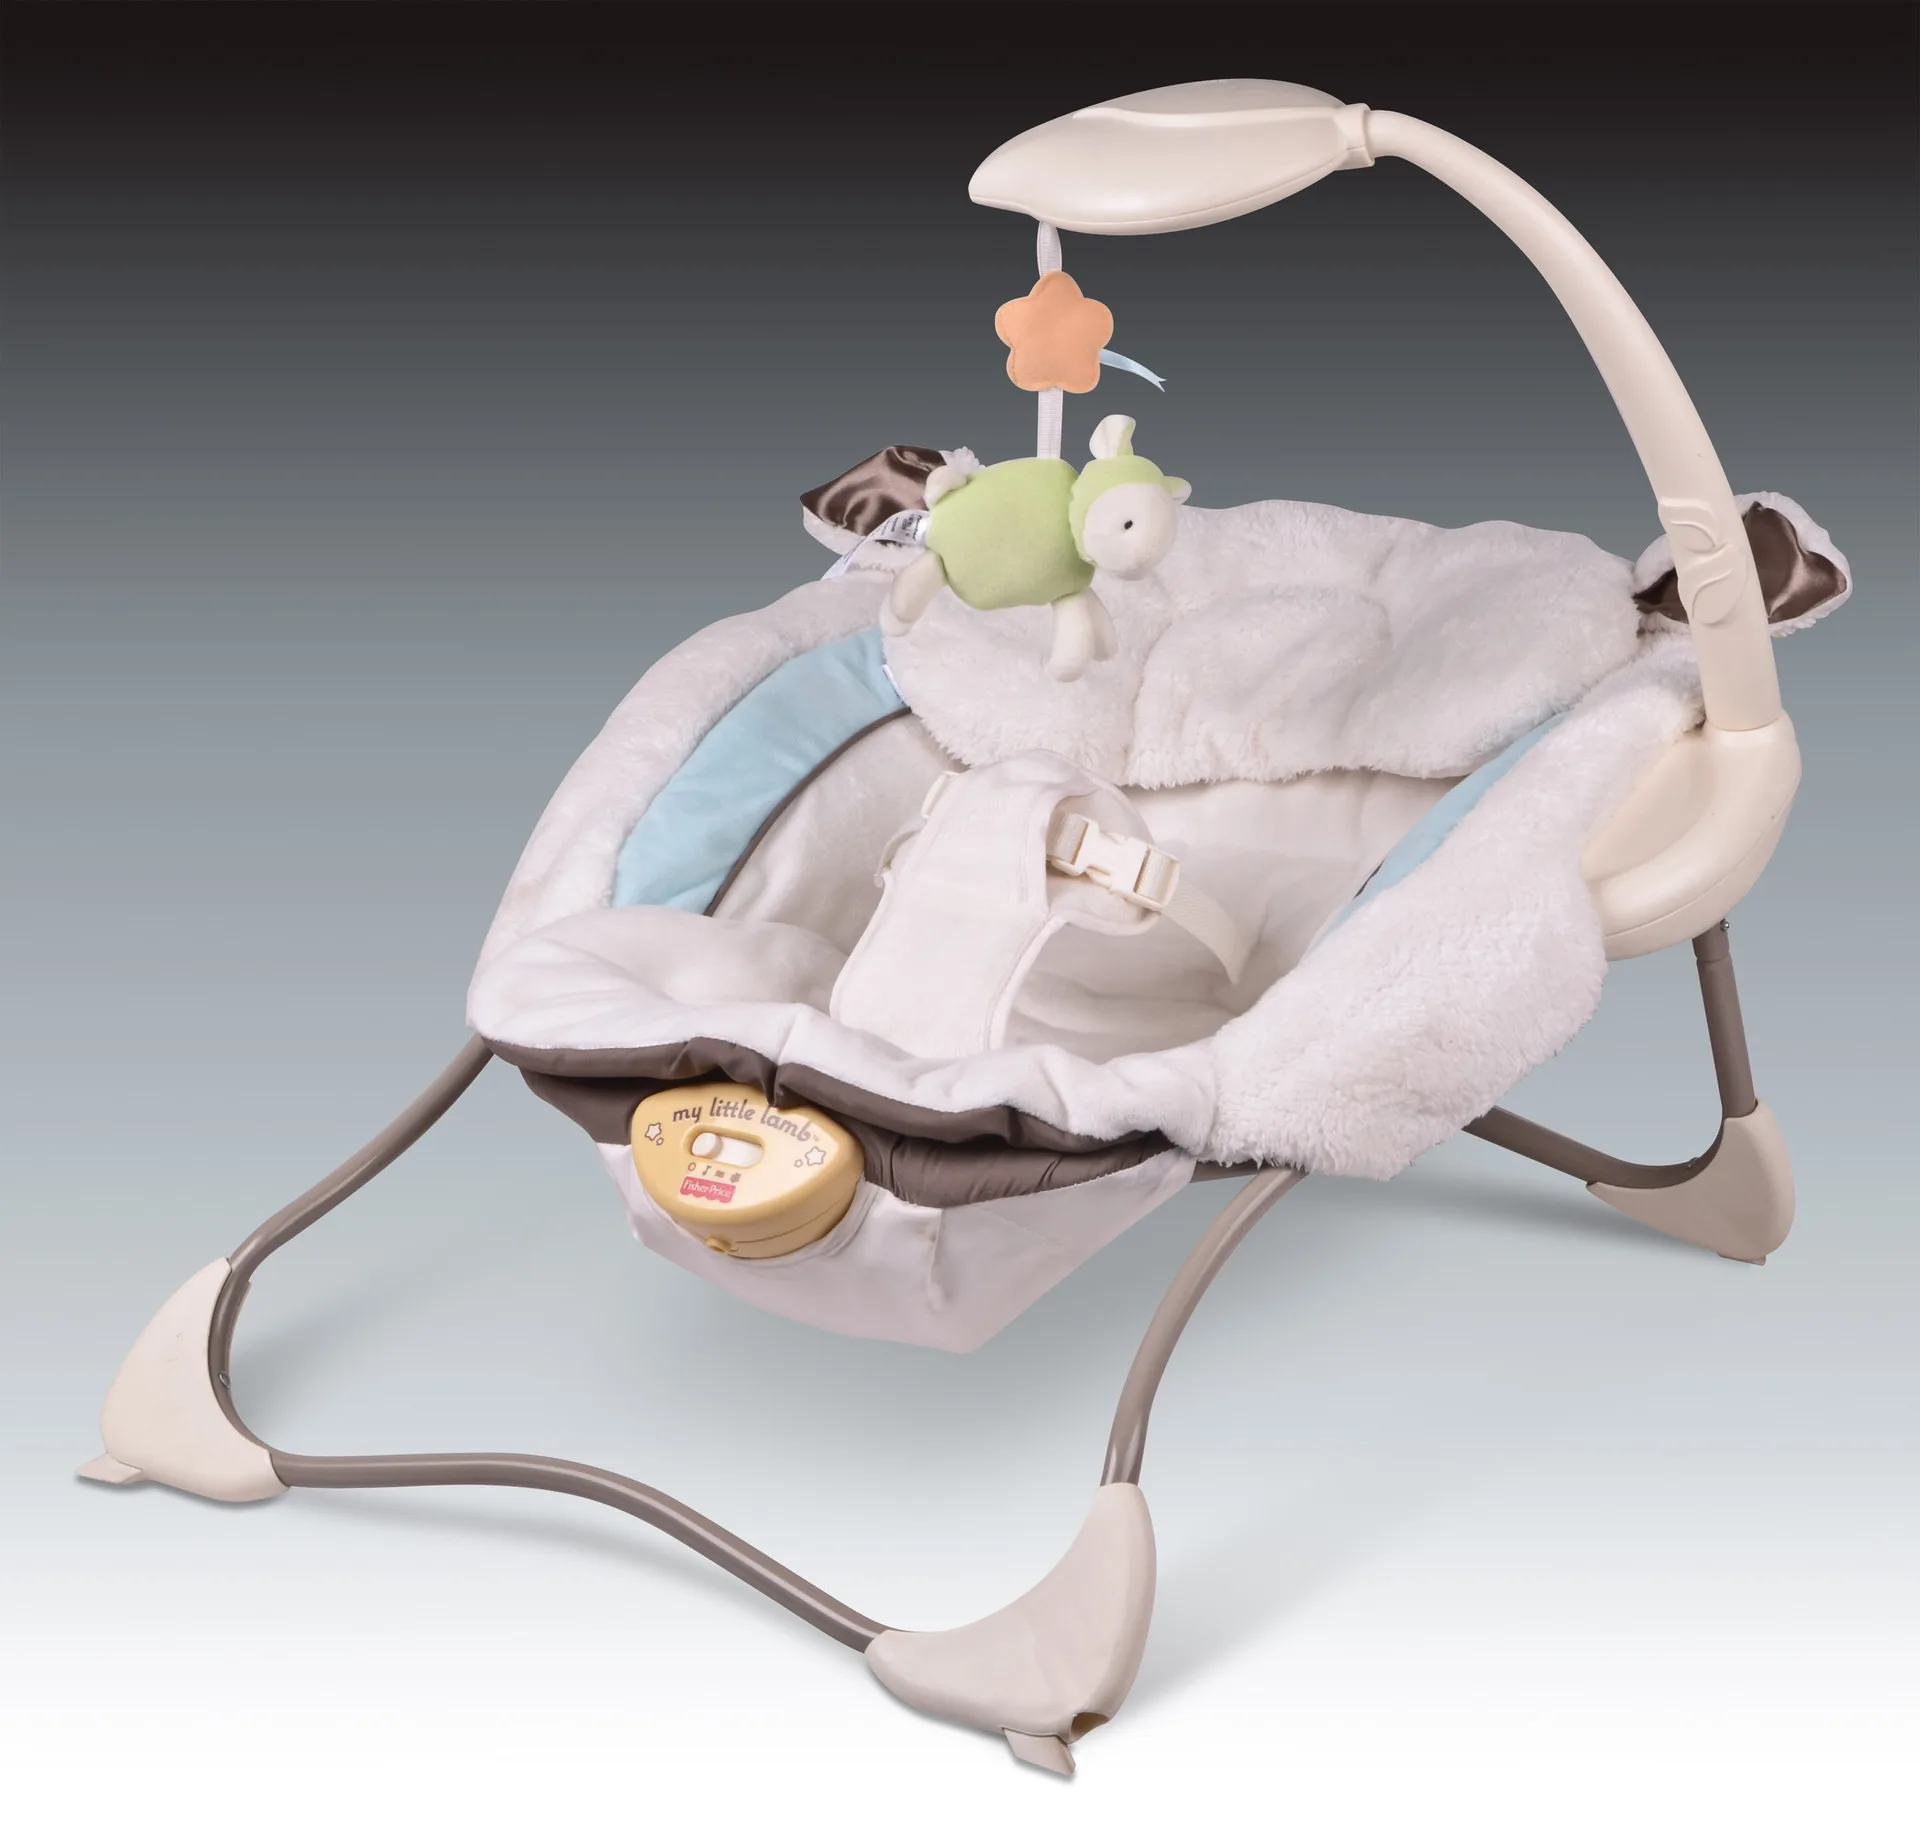 Качающаяся люлька. Электронные качели Swing Baby electrical. Качалка для новорожденных электрическая моон. Колыбель Tizo LZ-806. Кресло-качалка "Cradle",.